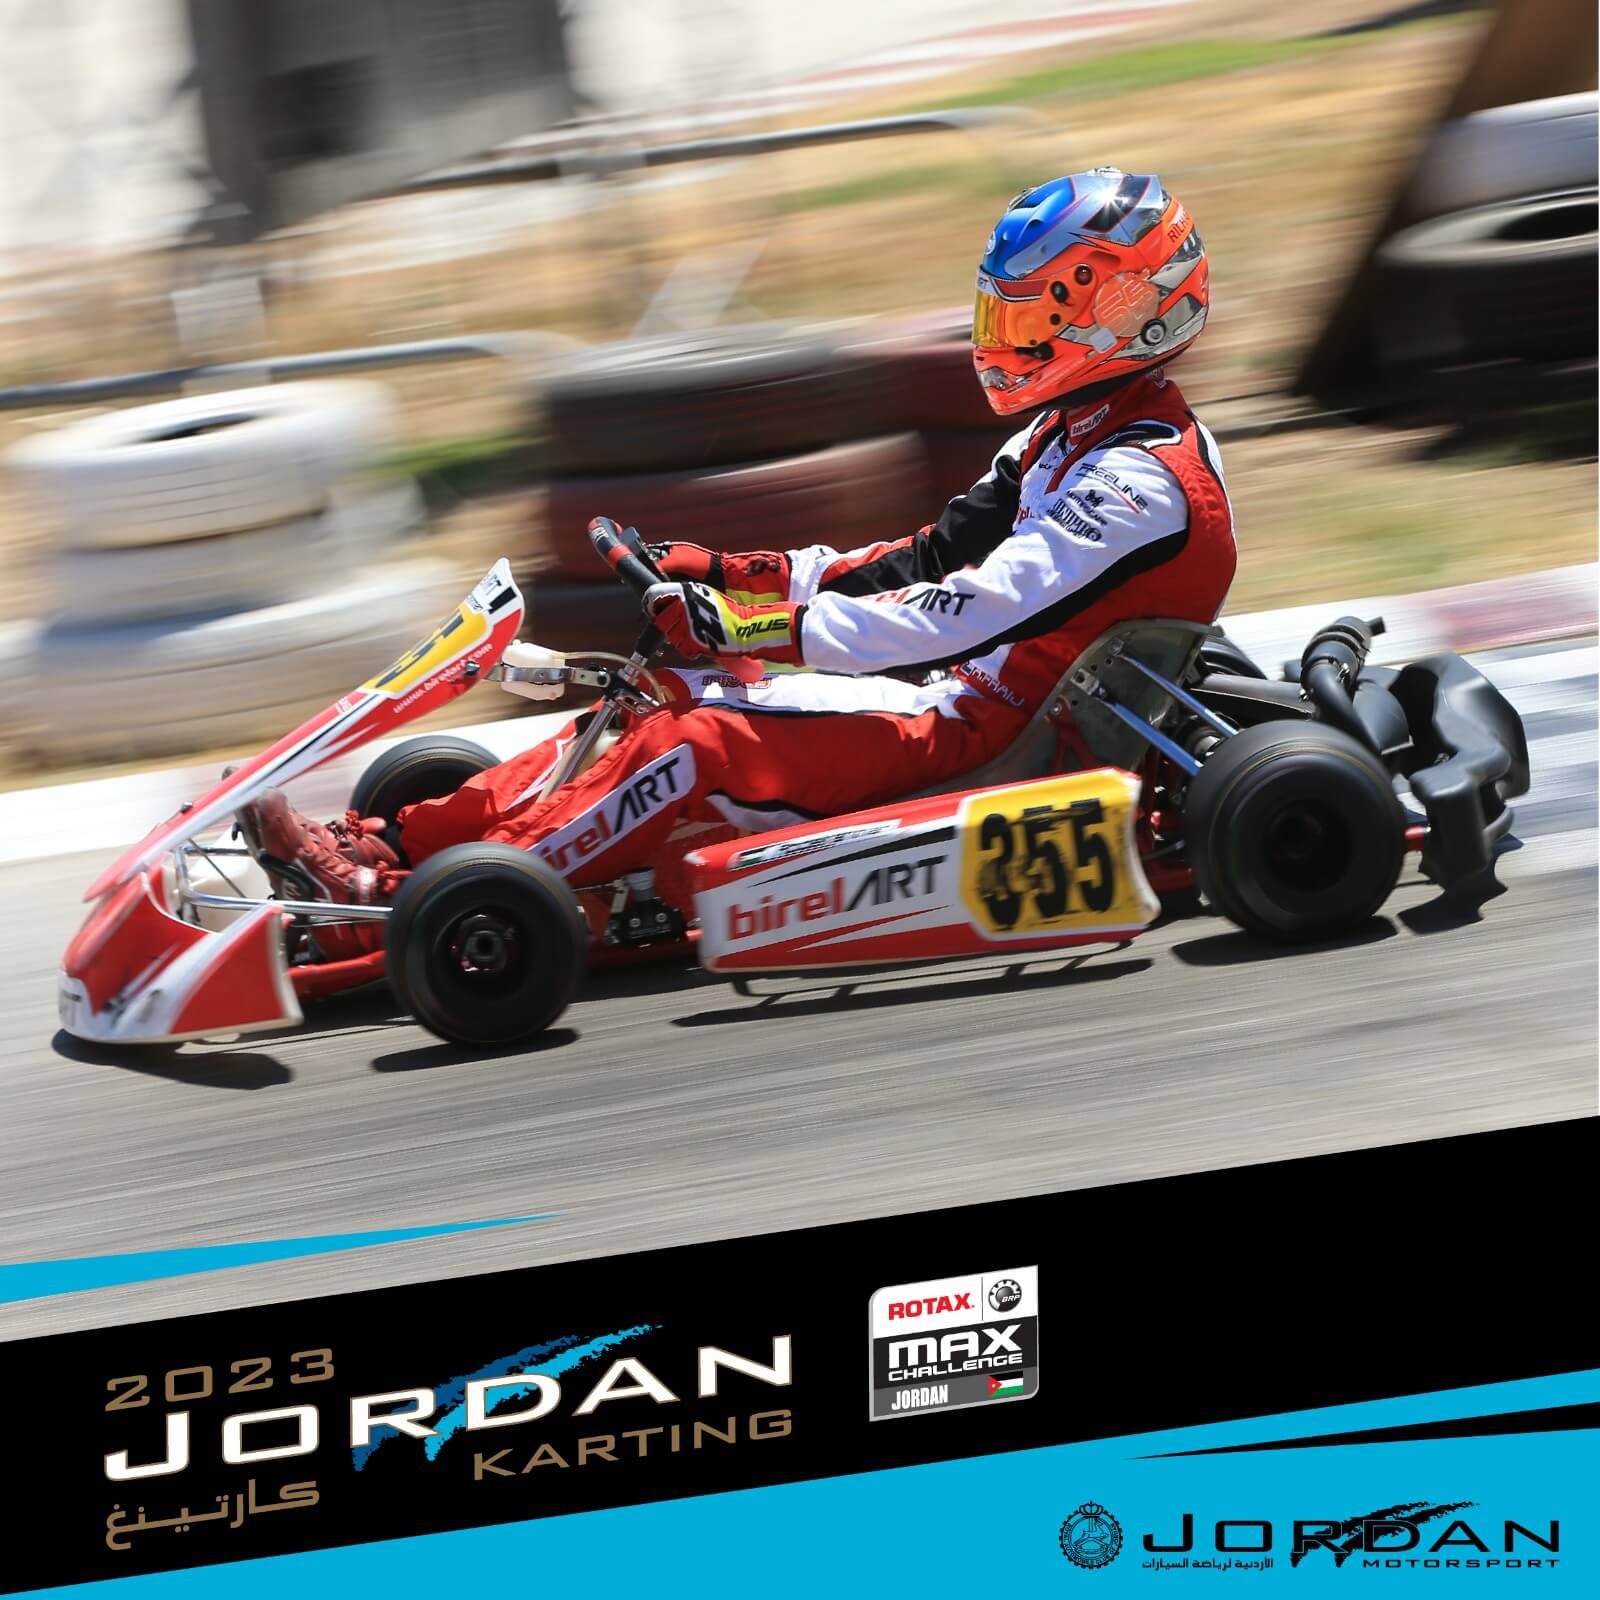 الجولة الأولى من بطولة الأردن لسباقات الكارتينغ تنطلق الخميس في حلبة منجا بمادبا